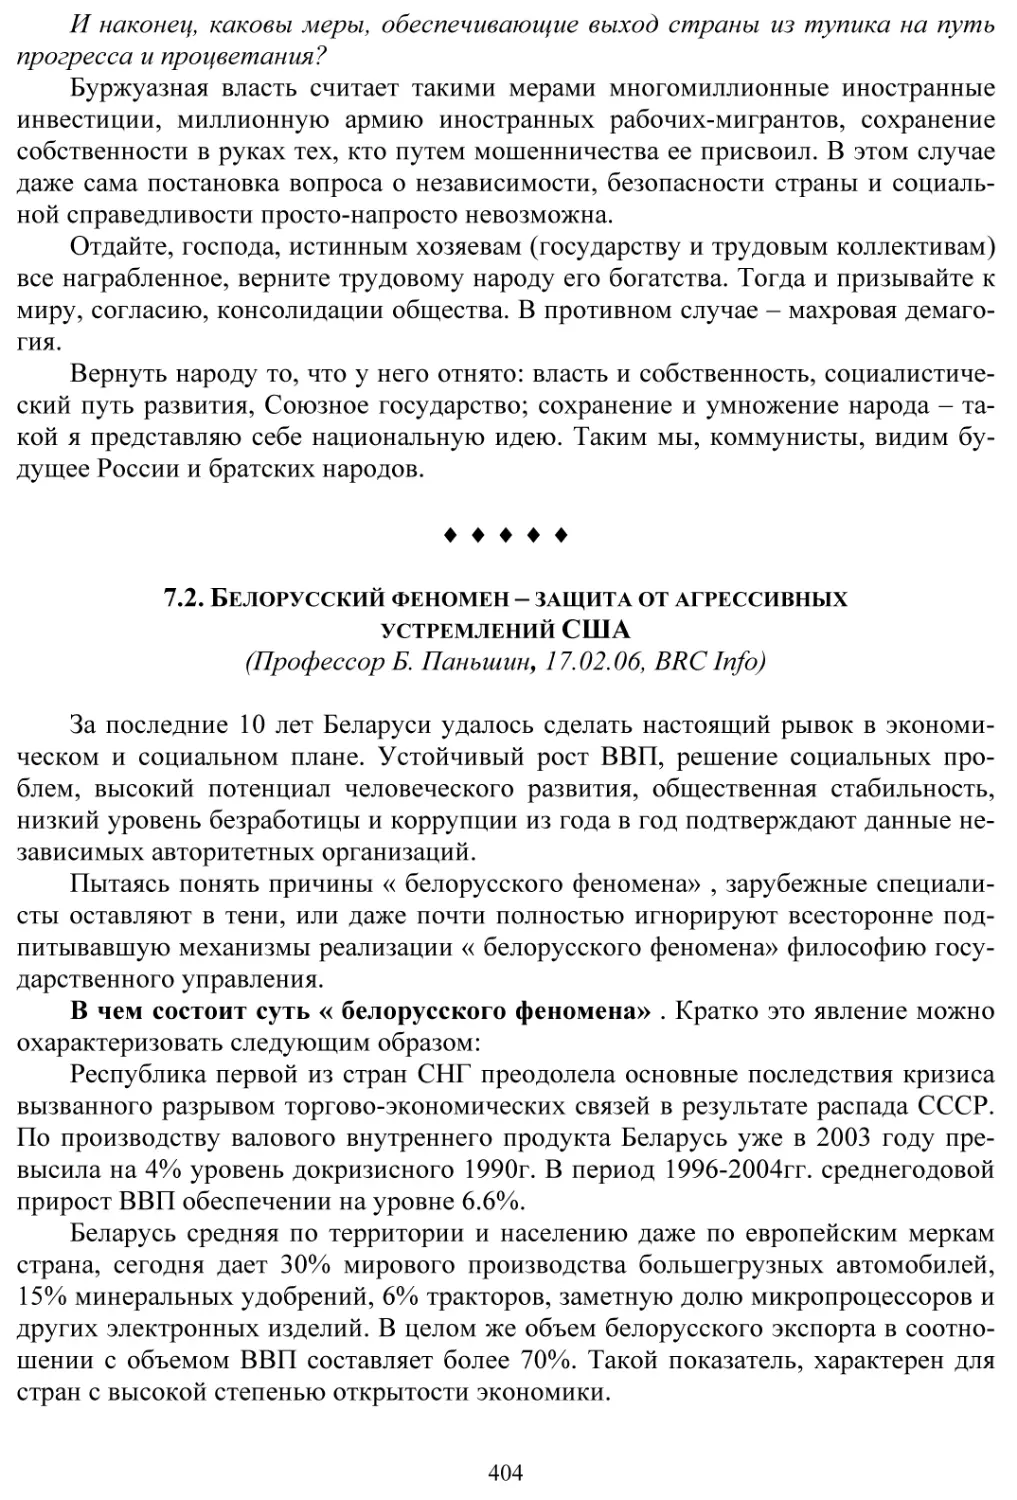 7.2. Белорусский феномен - защита от агрессивных устремлений США